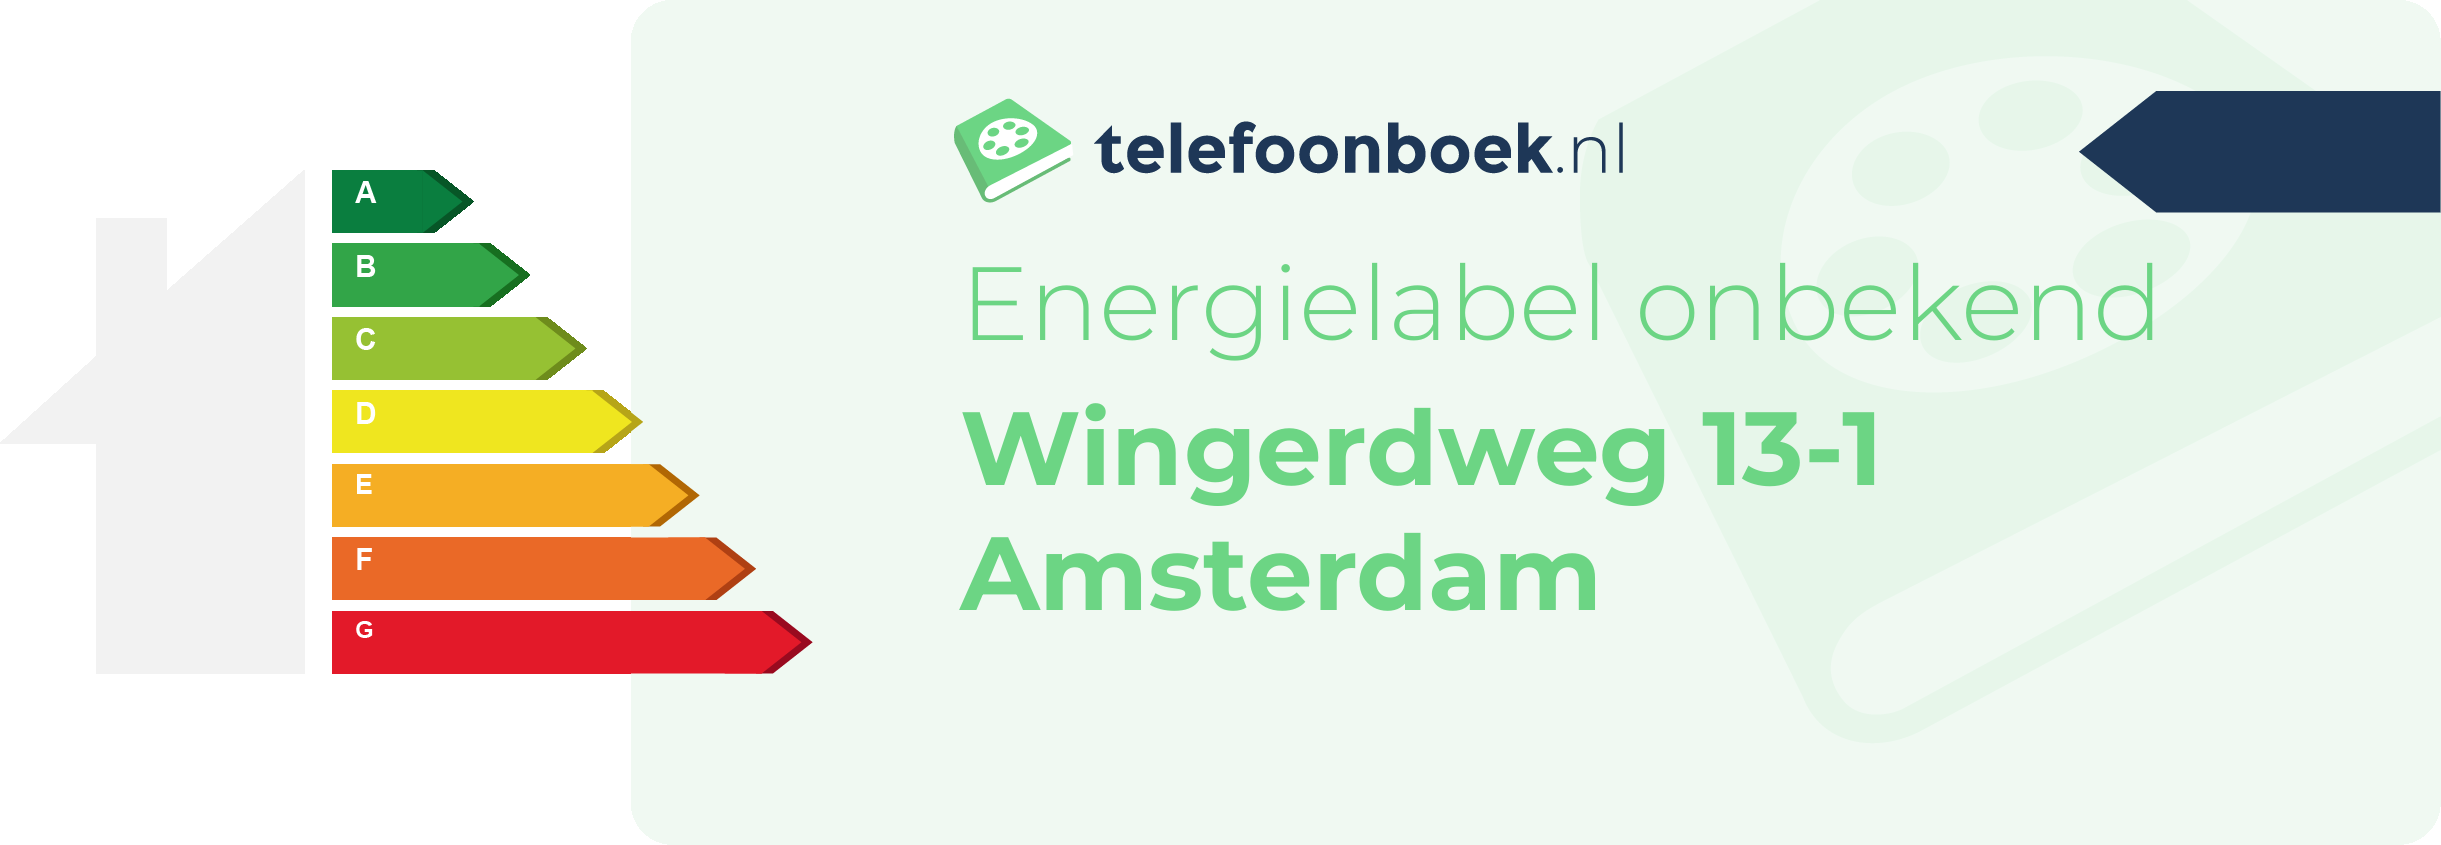 Energielabel Wingerdweg 13-1 Amsterdam